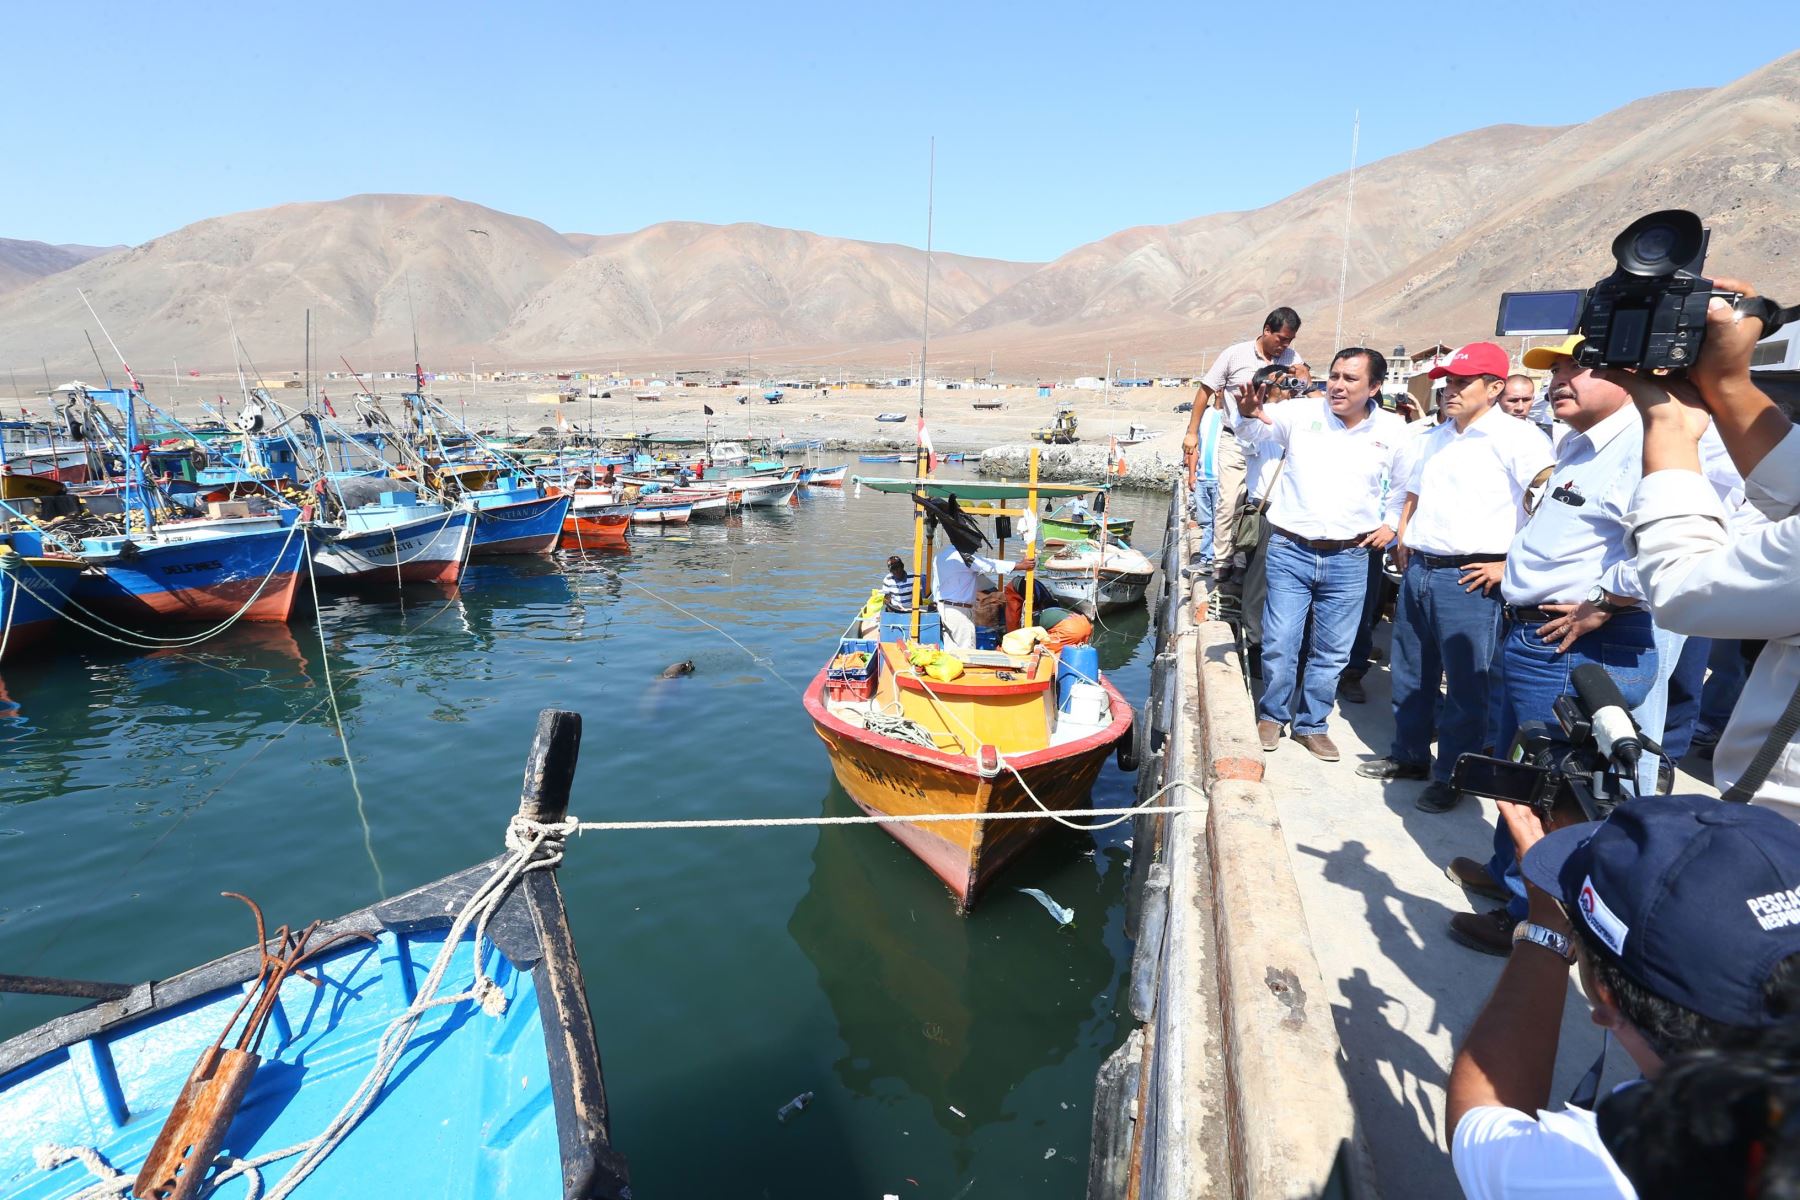 Jefe de Estado inspeccionó las obras de mejoramiento del Desembarcadero Pesquero Artesanal en la localidad de Morro Sama en el distrito de Sama, región Tacna. ANDINA/Prensa Presidencia